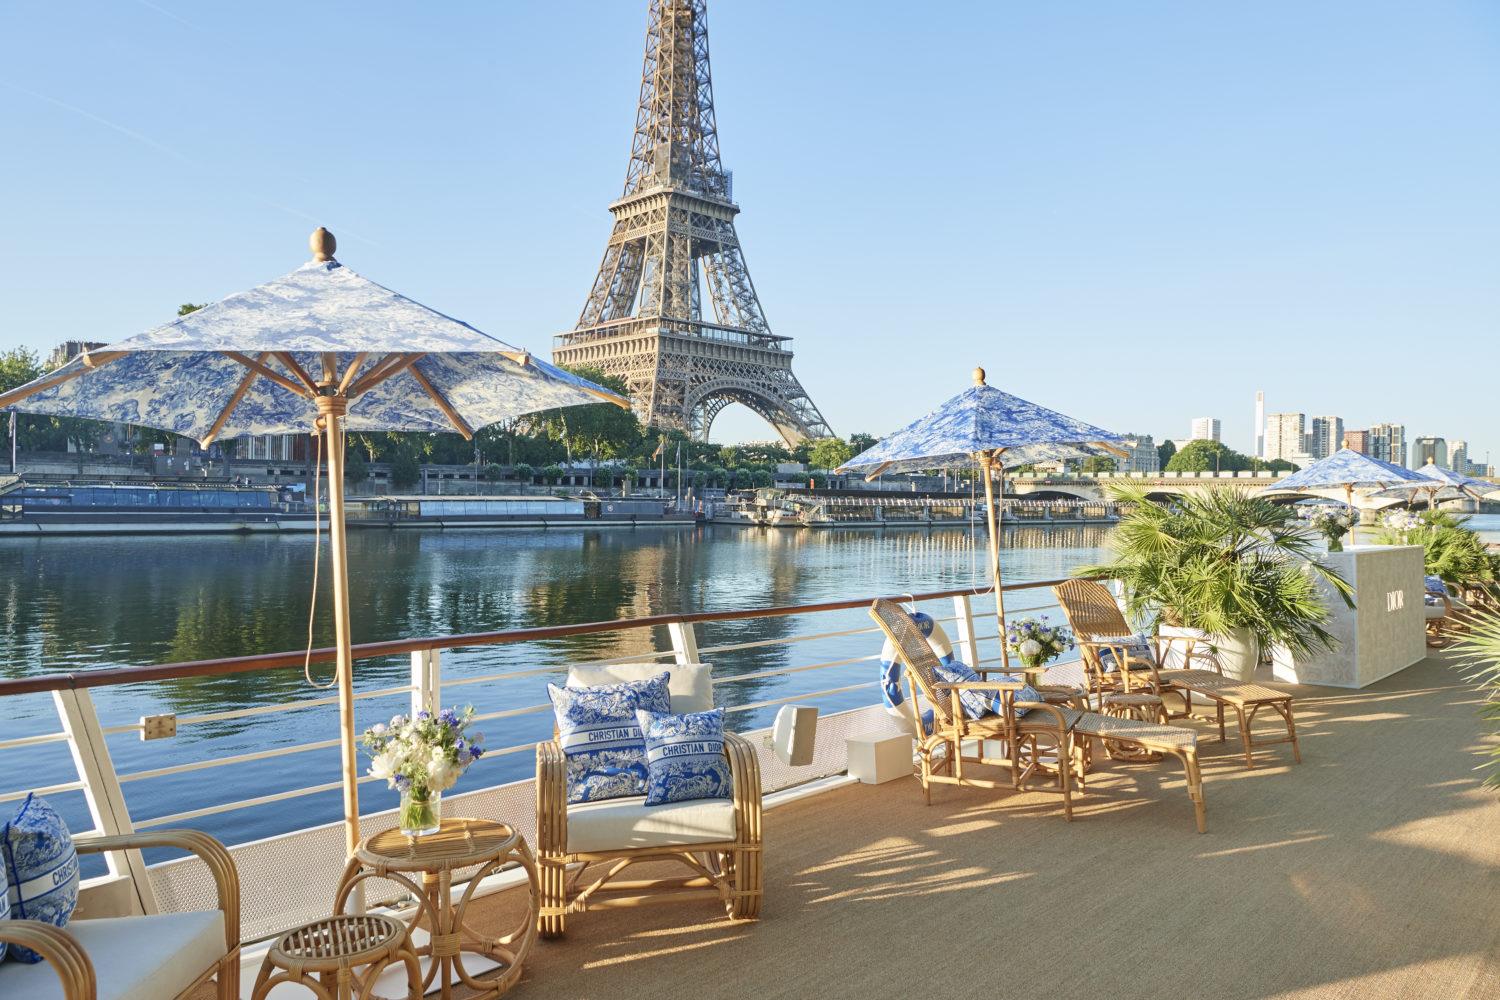 Cheval Blanc Paris  Le nouveau palace parisien avec un spa Dior étincelant   Luxe Wellness Club